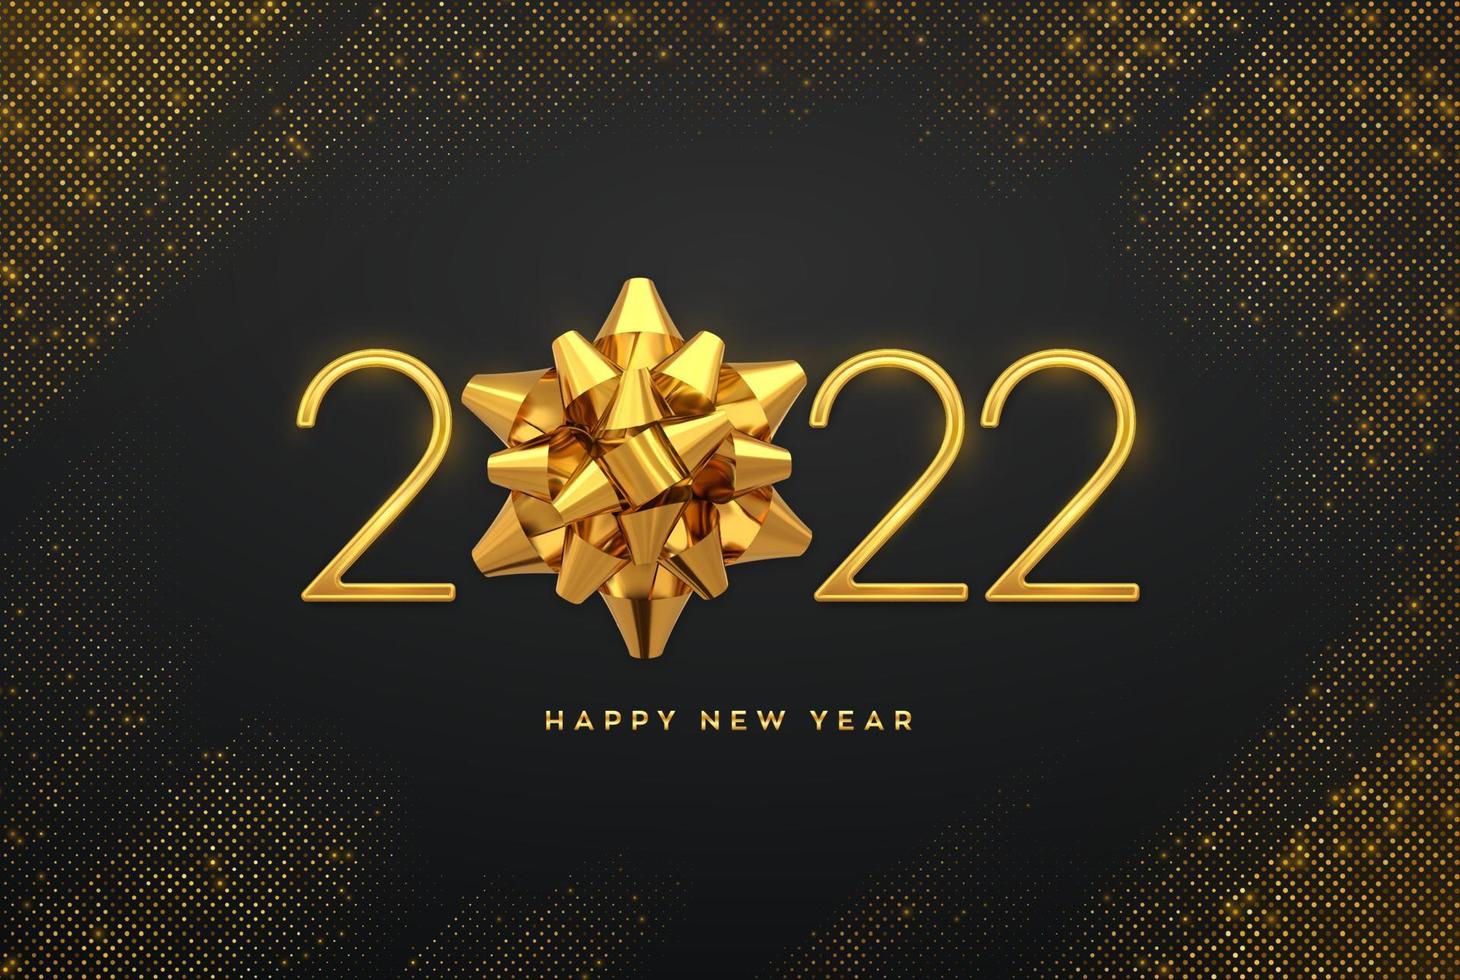 feliz ano novo de 2022. luxo metálico dourado números 2022 com laço de presente dourado em fundo cintilante. cenário estourando com brilhos. cartão, cartaz festivo ou banner de férias. vetor. vetor